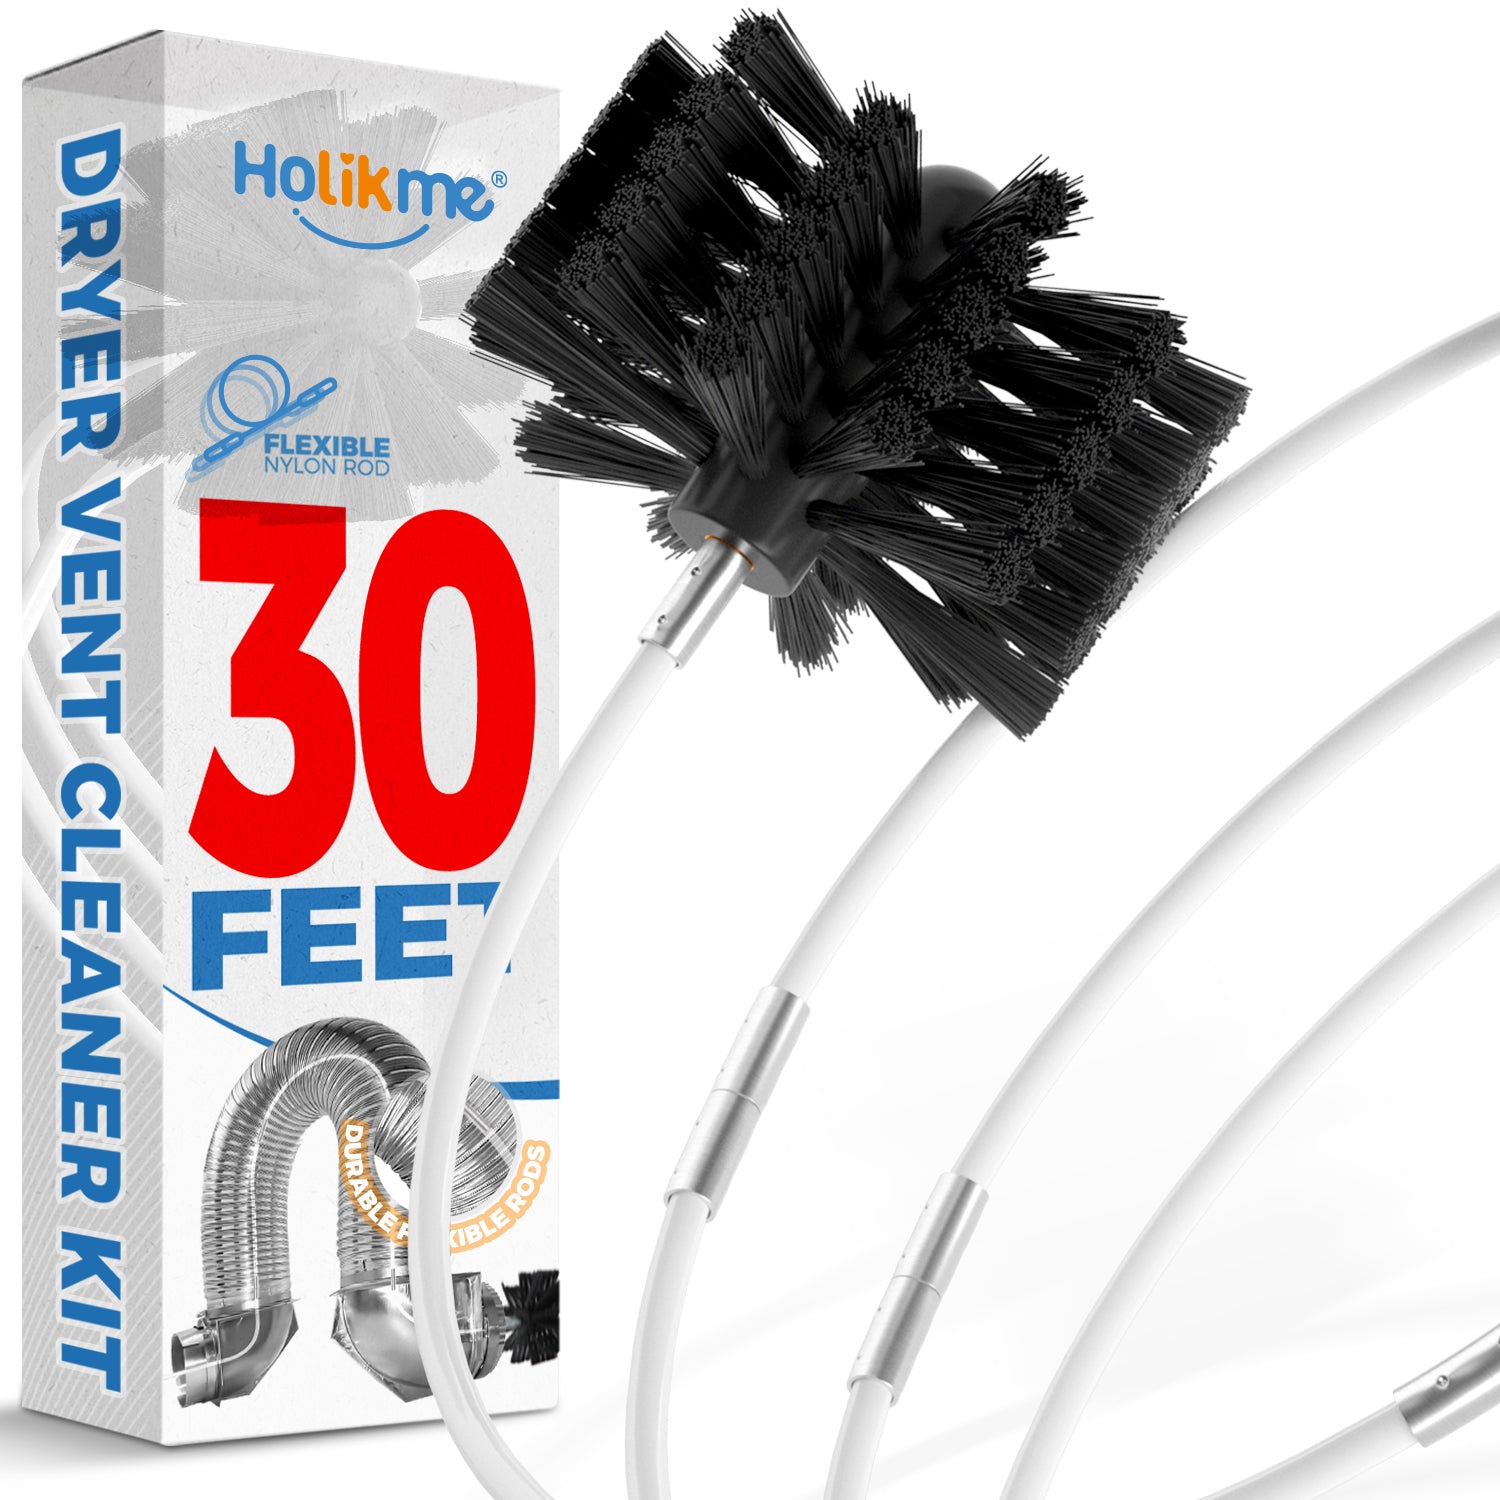 Holikme 30 Feet Dryer Vent Cleaner Kit, Flexible Lint Brush with